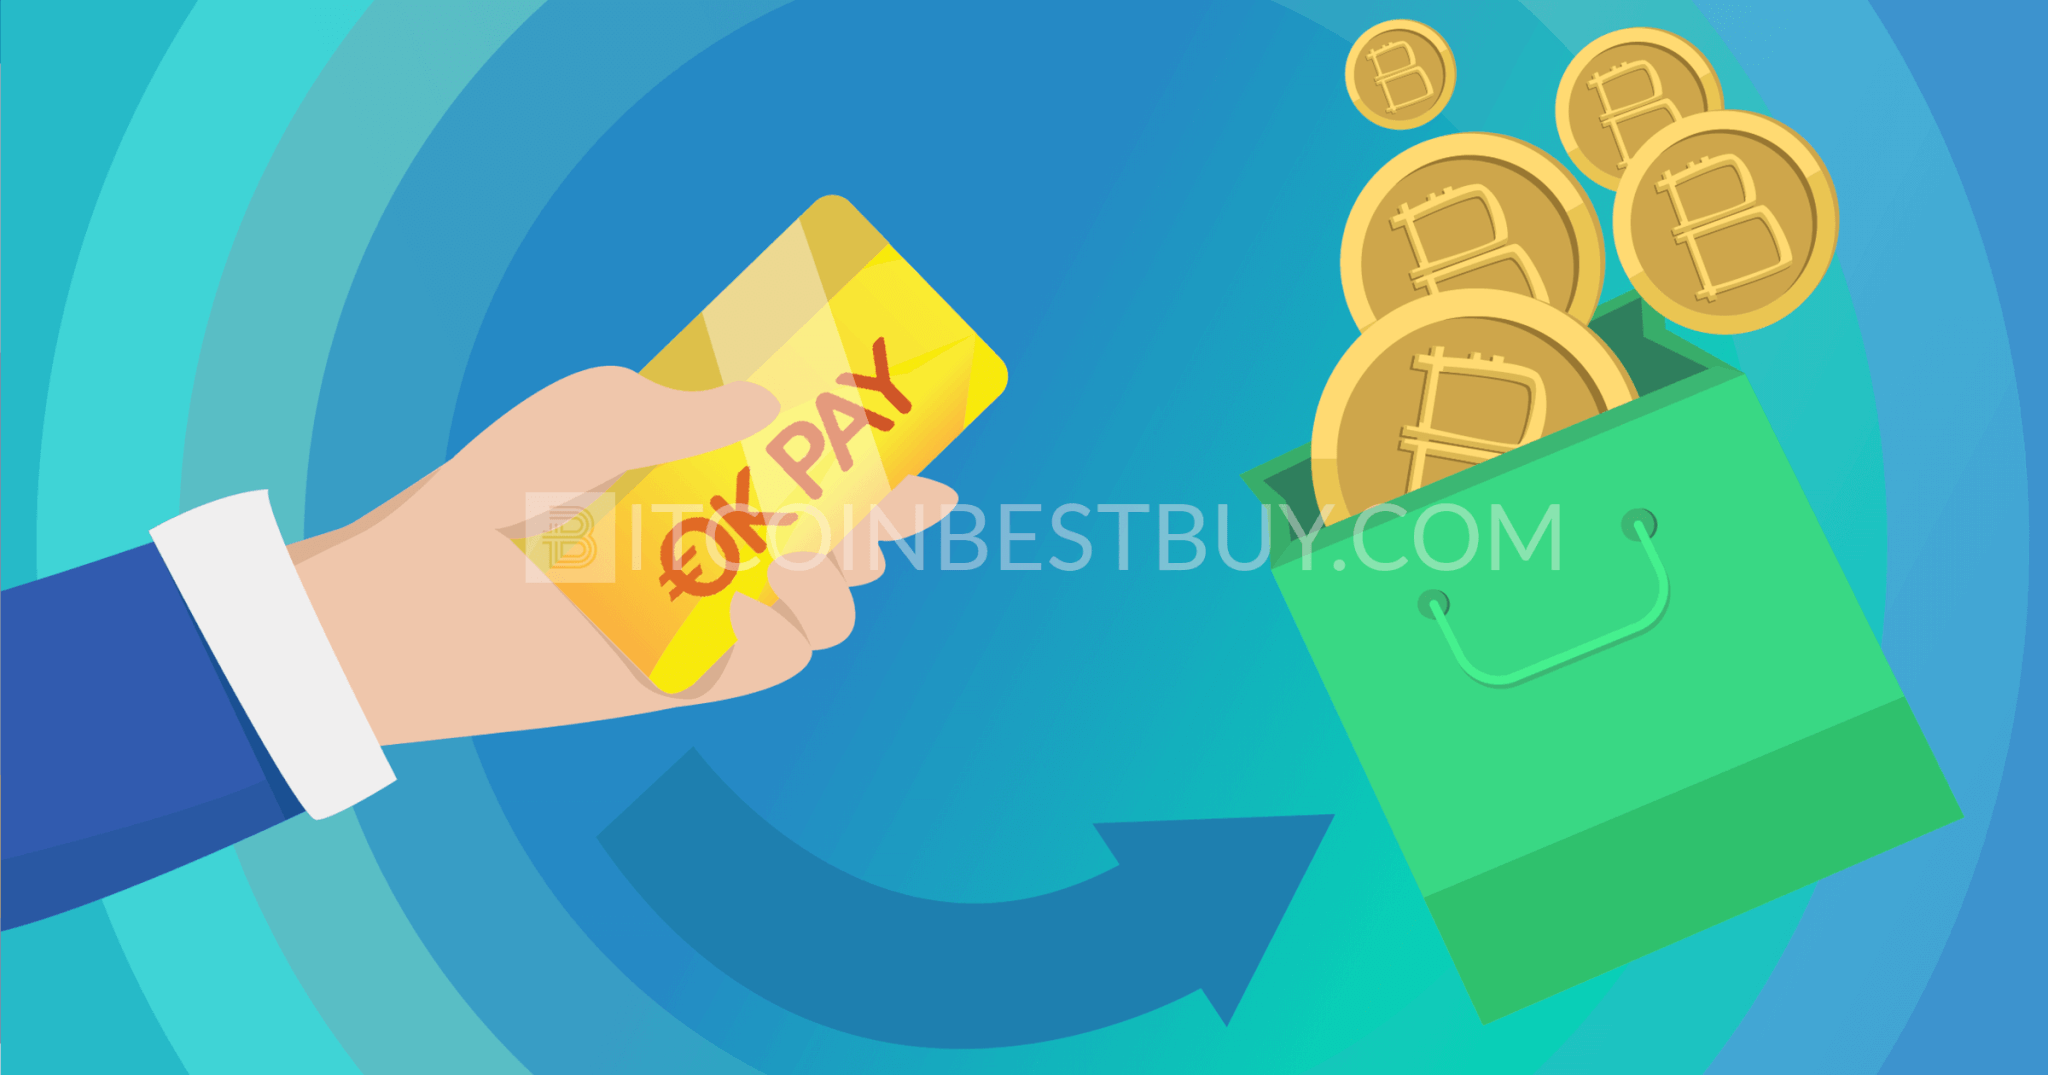 Bitcoin kopen met OKPay